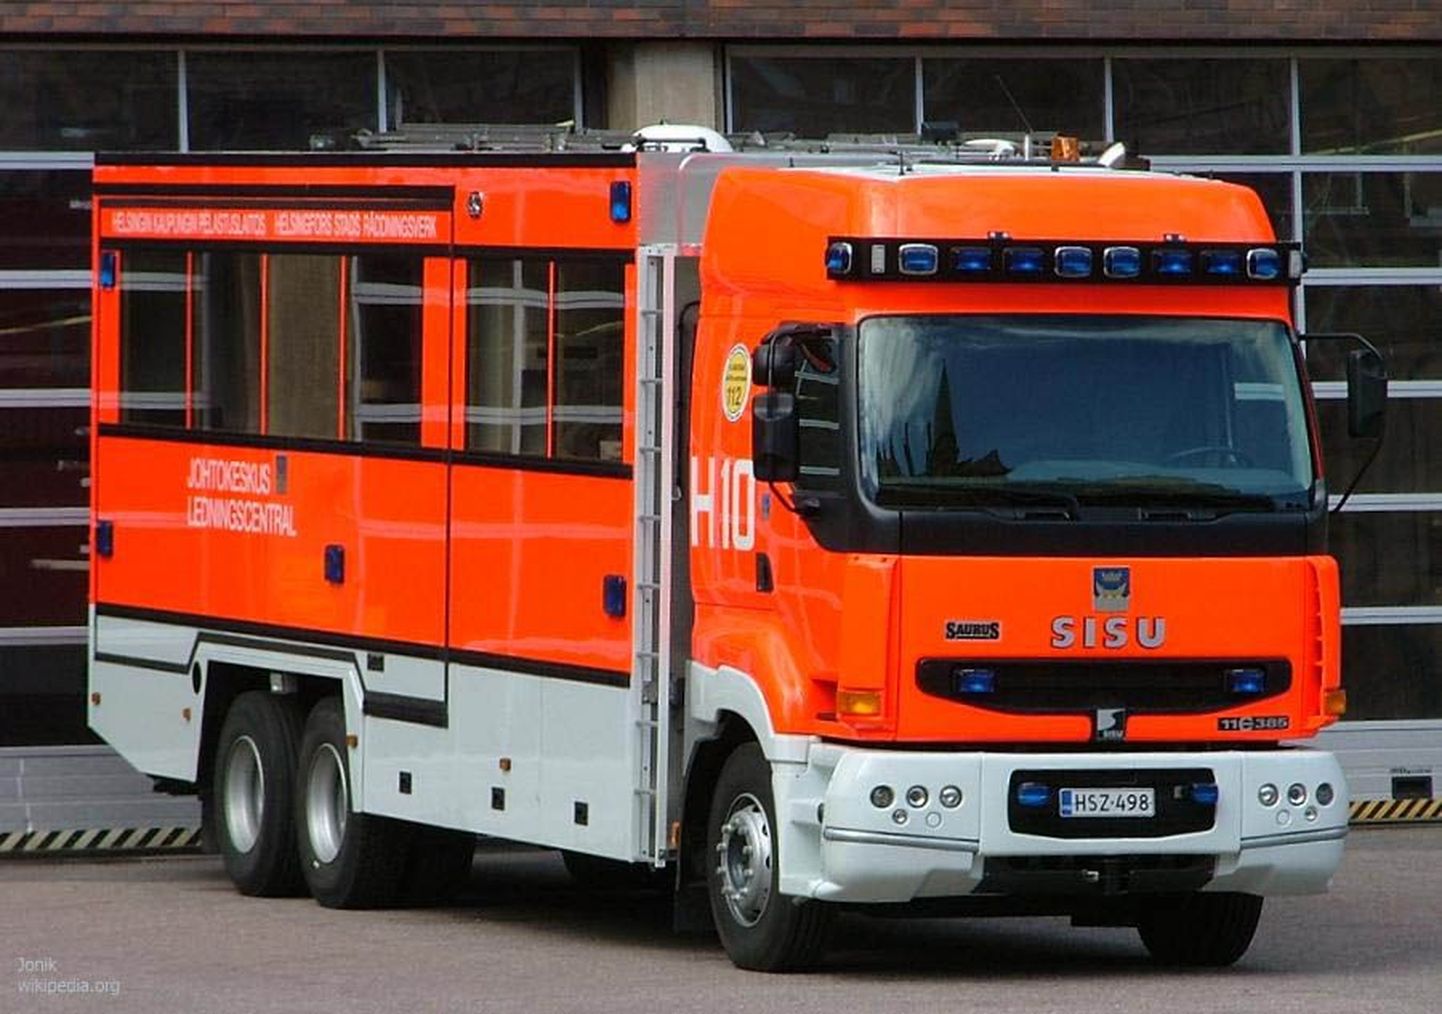 Helsingi päästekeskuse tuletõrjeauto